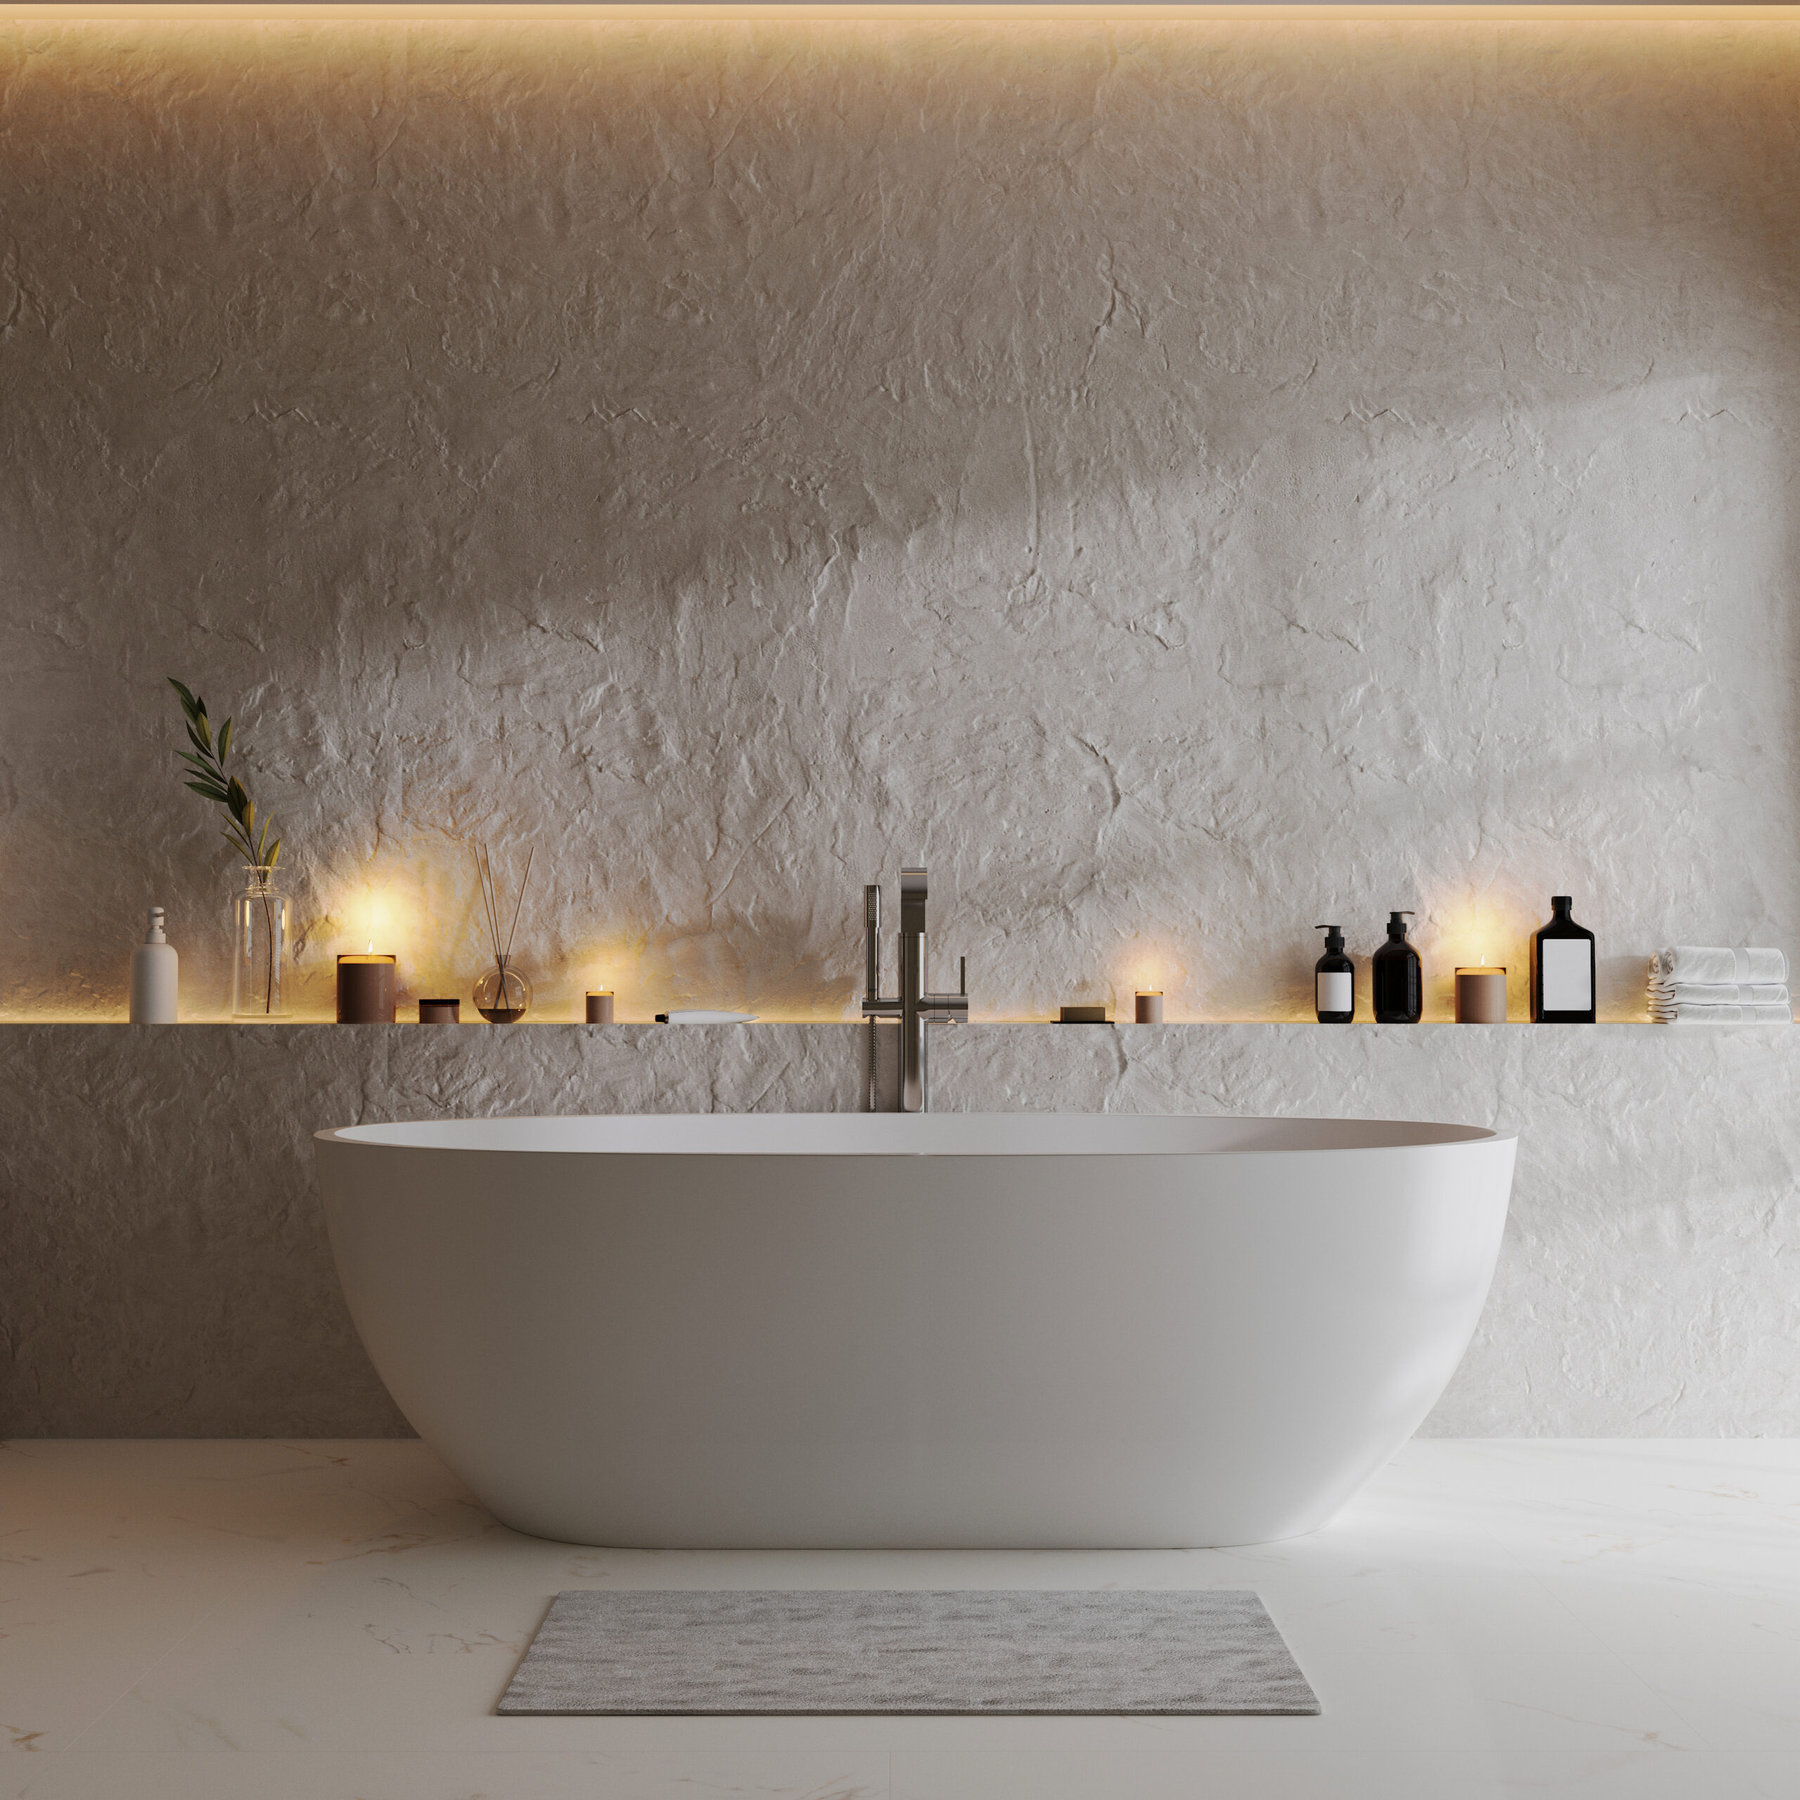 Ein weißes Badezimmer mit Badewanne und Kerzen in Zermatt.